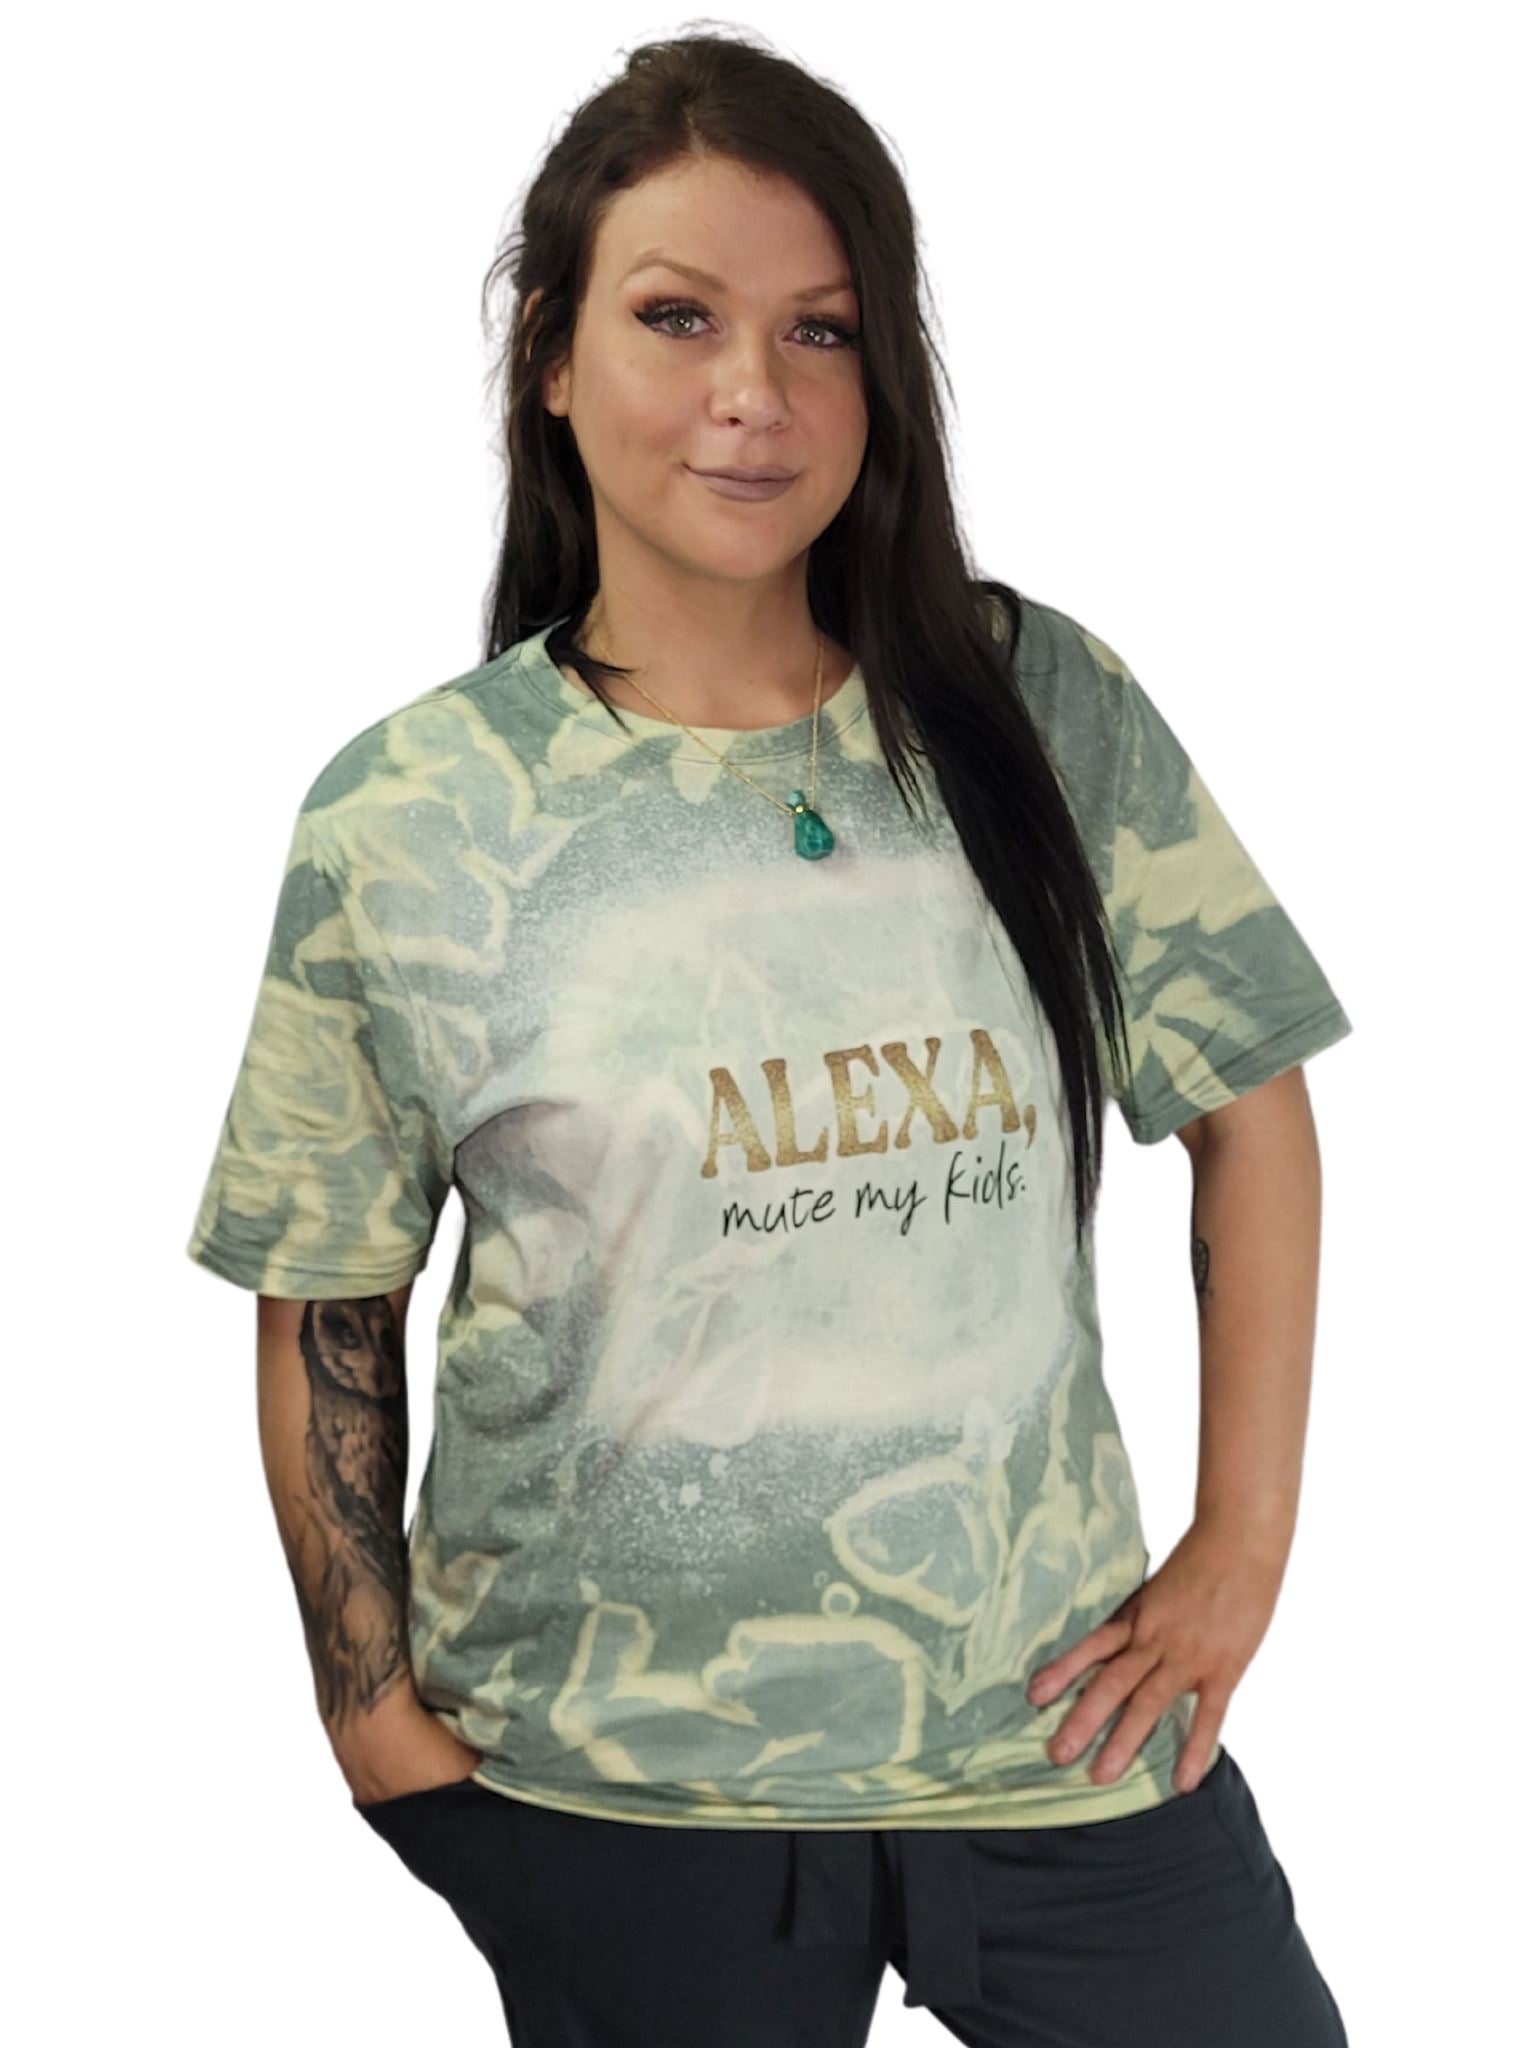 ALEXA Mute My Kids Green Graphic Design T-Shirt - Handmade Tshirt Aambers Goodies xx 